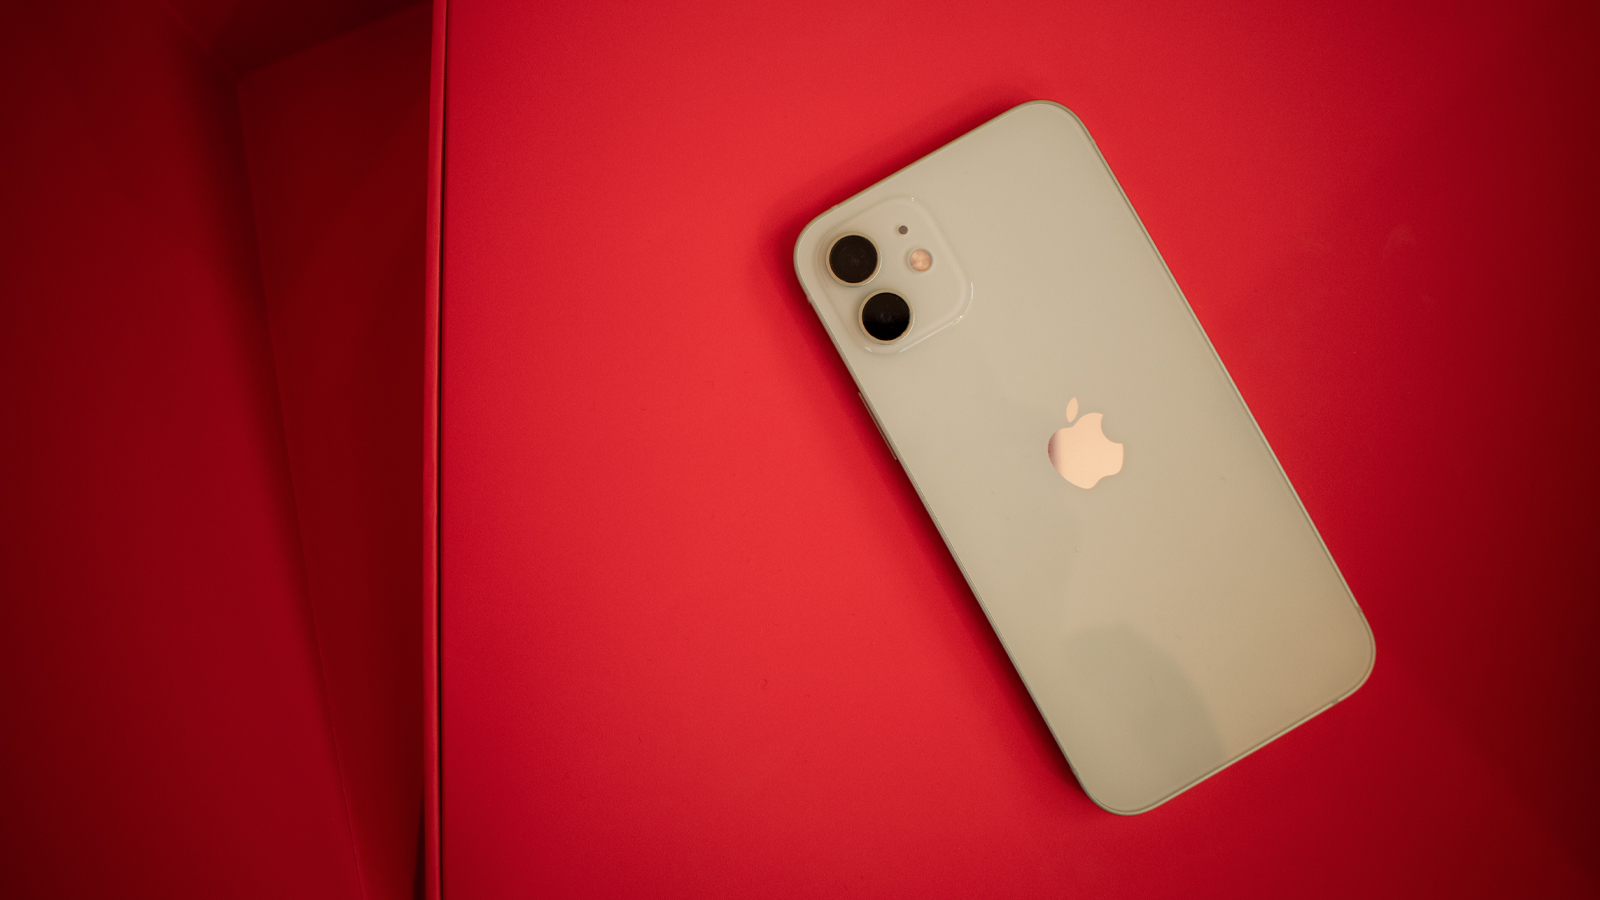 أخبار 29 أكتوبر 2020
Apple تخطط لتقديم iPhone بسعة تخزين 1 تيرابايت